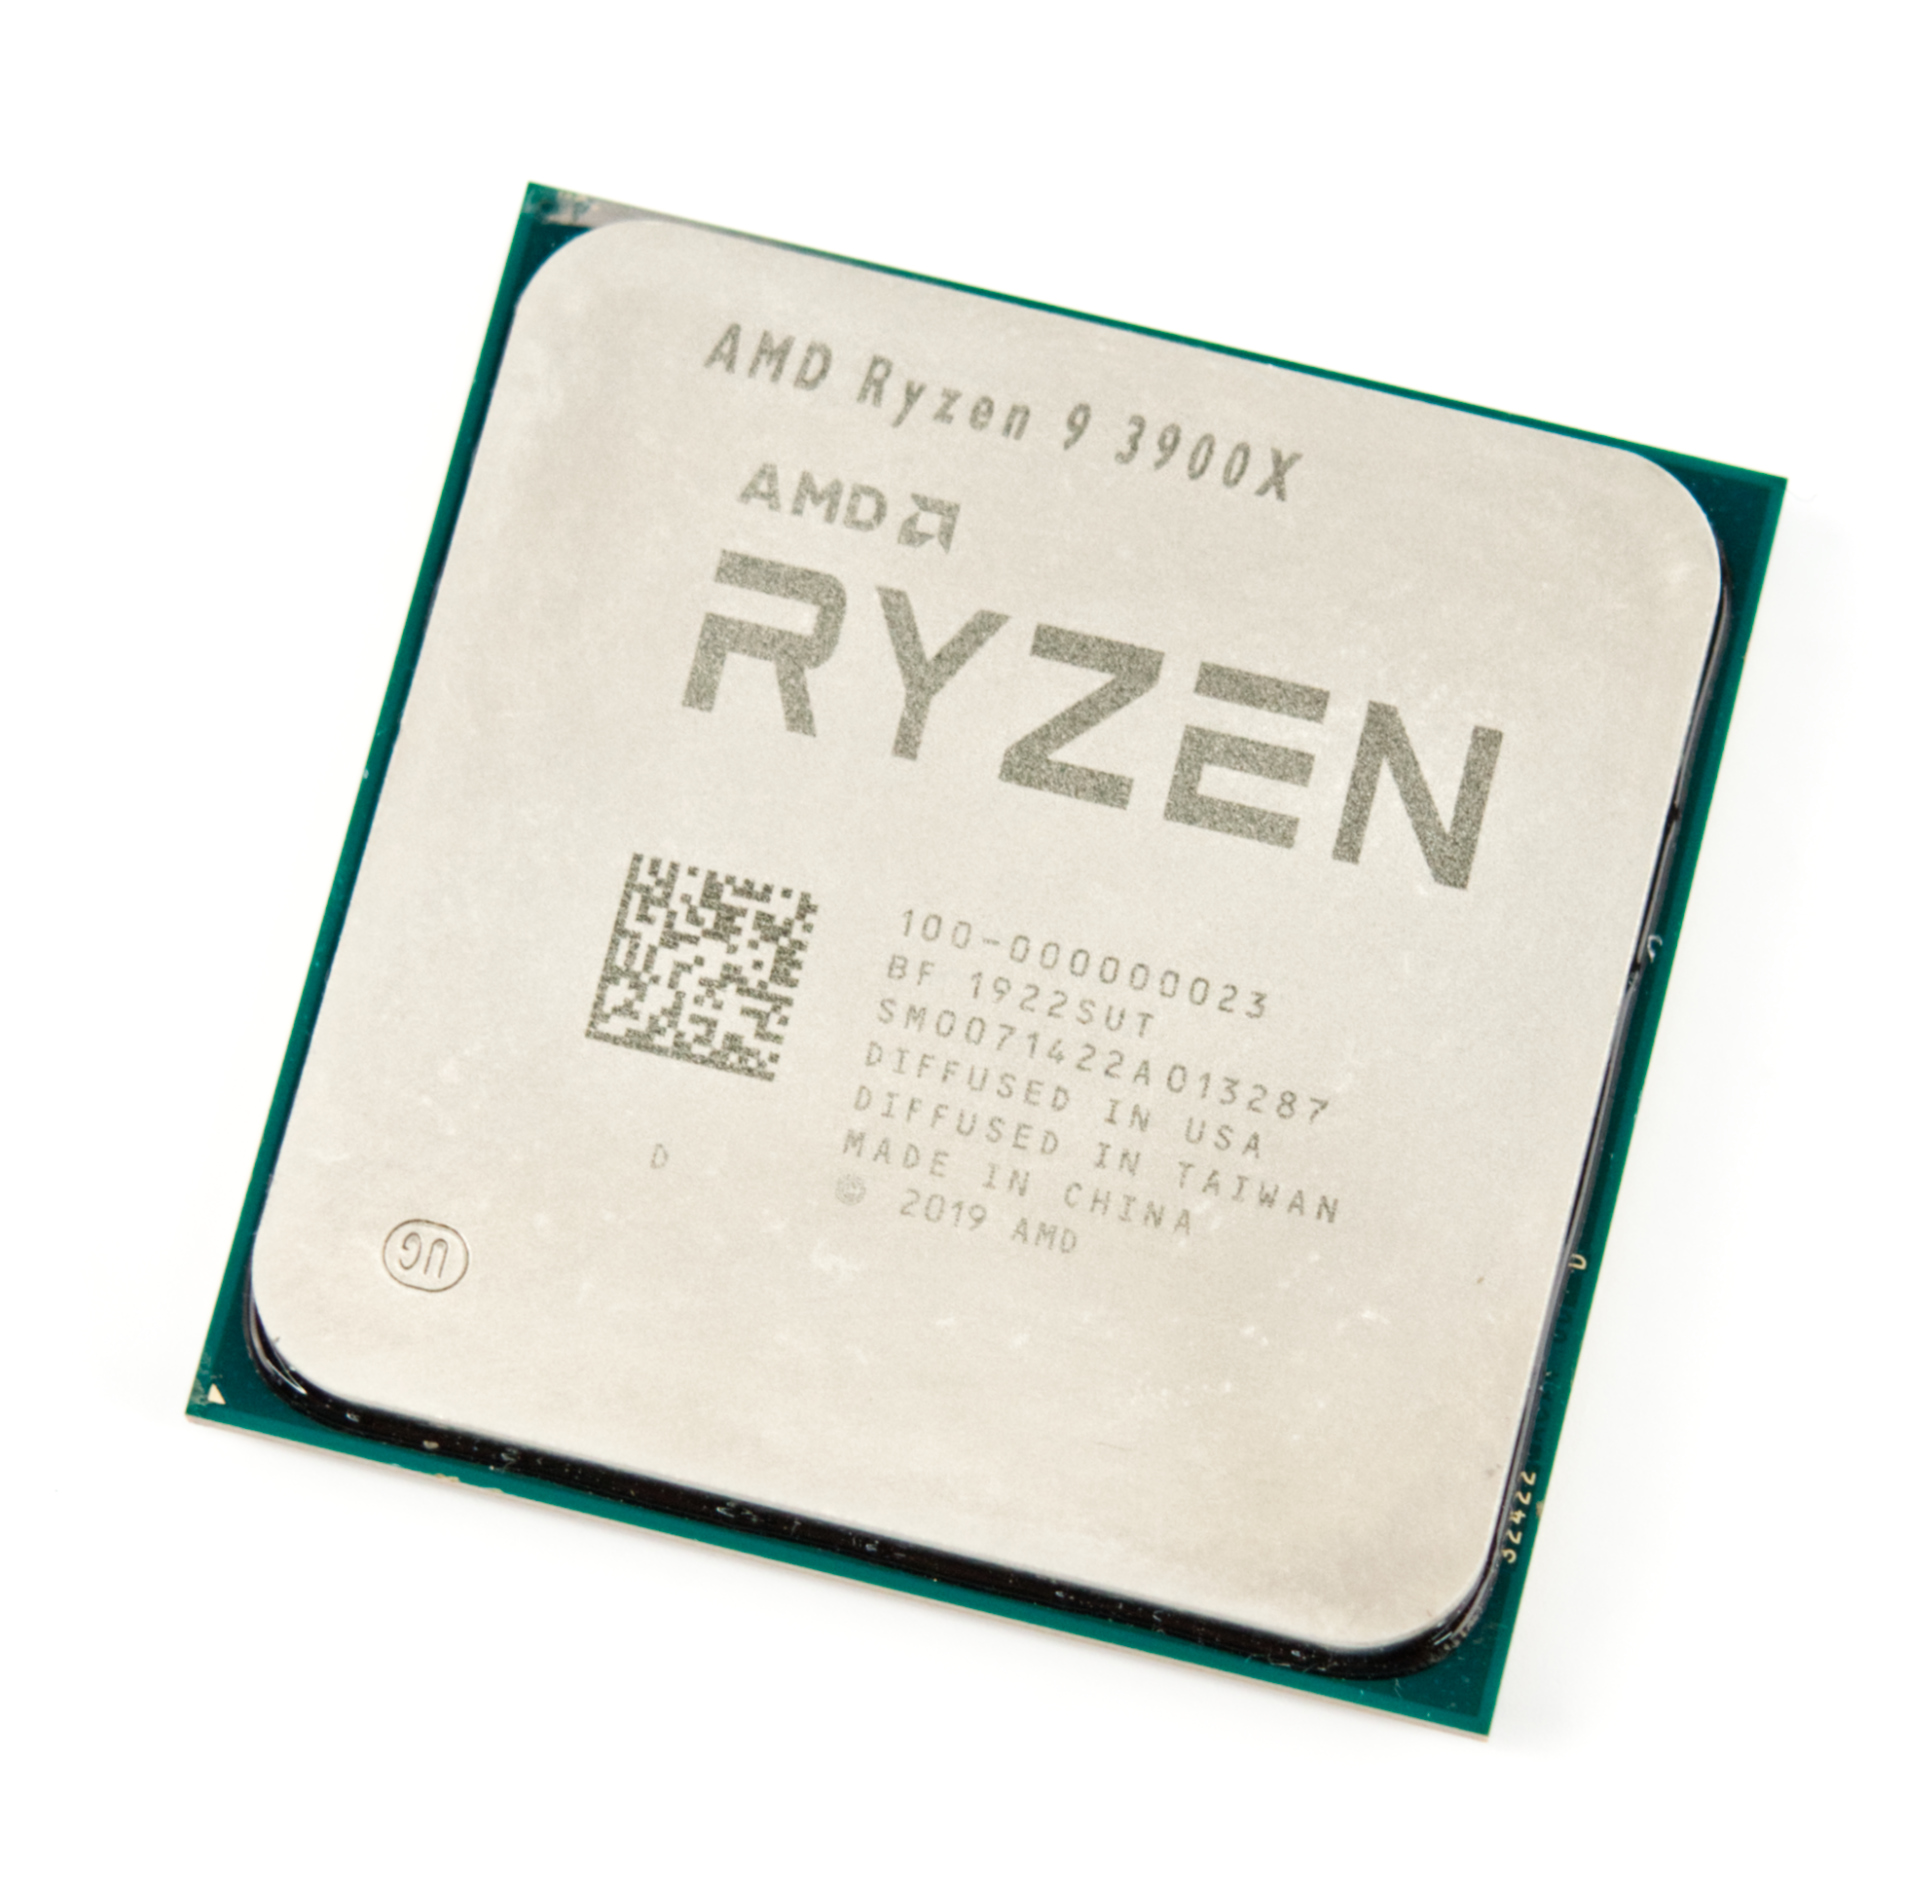 一番人気物 AMD Ryzen 9 3900X CPU econet.bi